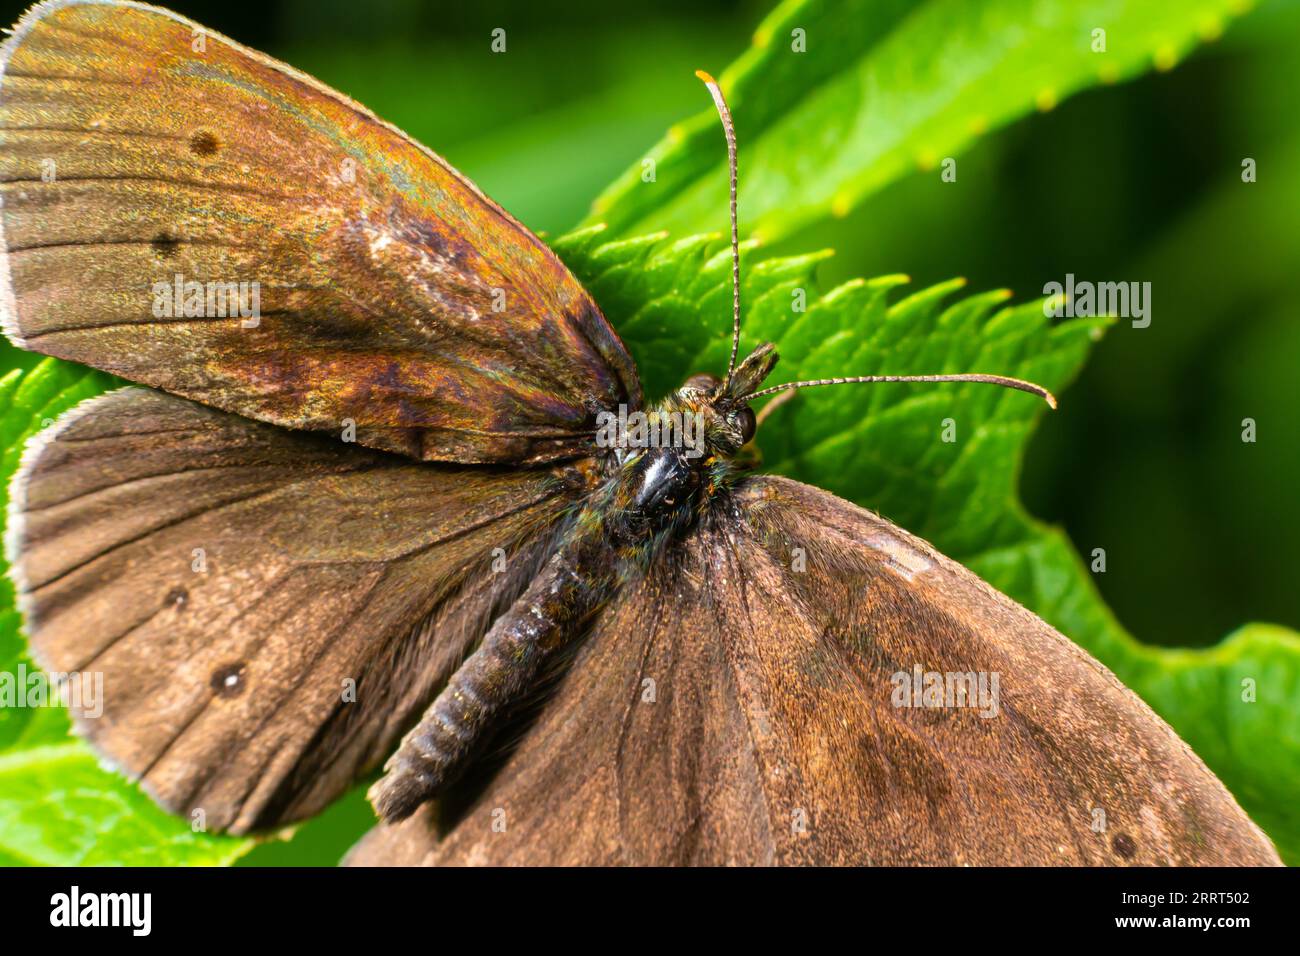 Nahaufnahme auf dem Ringelblattfalter, Aphantopus hyperantus, sitzend mit weit offenen Flügeln auf einem grünen Blatt. Stockfoto